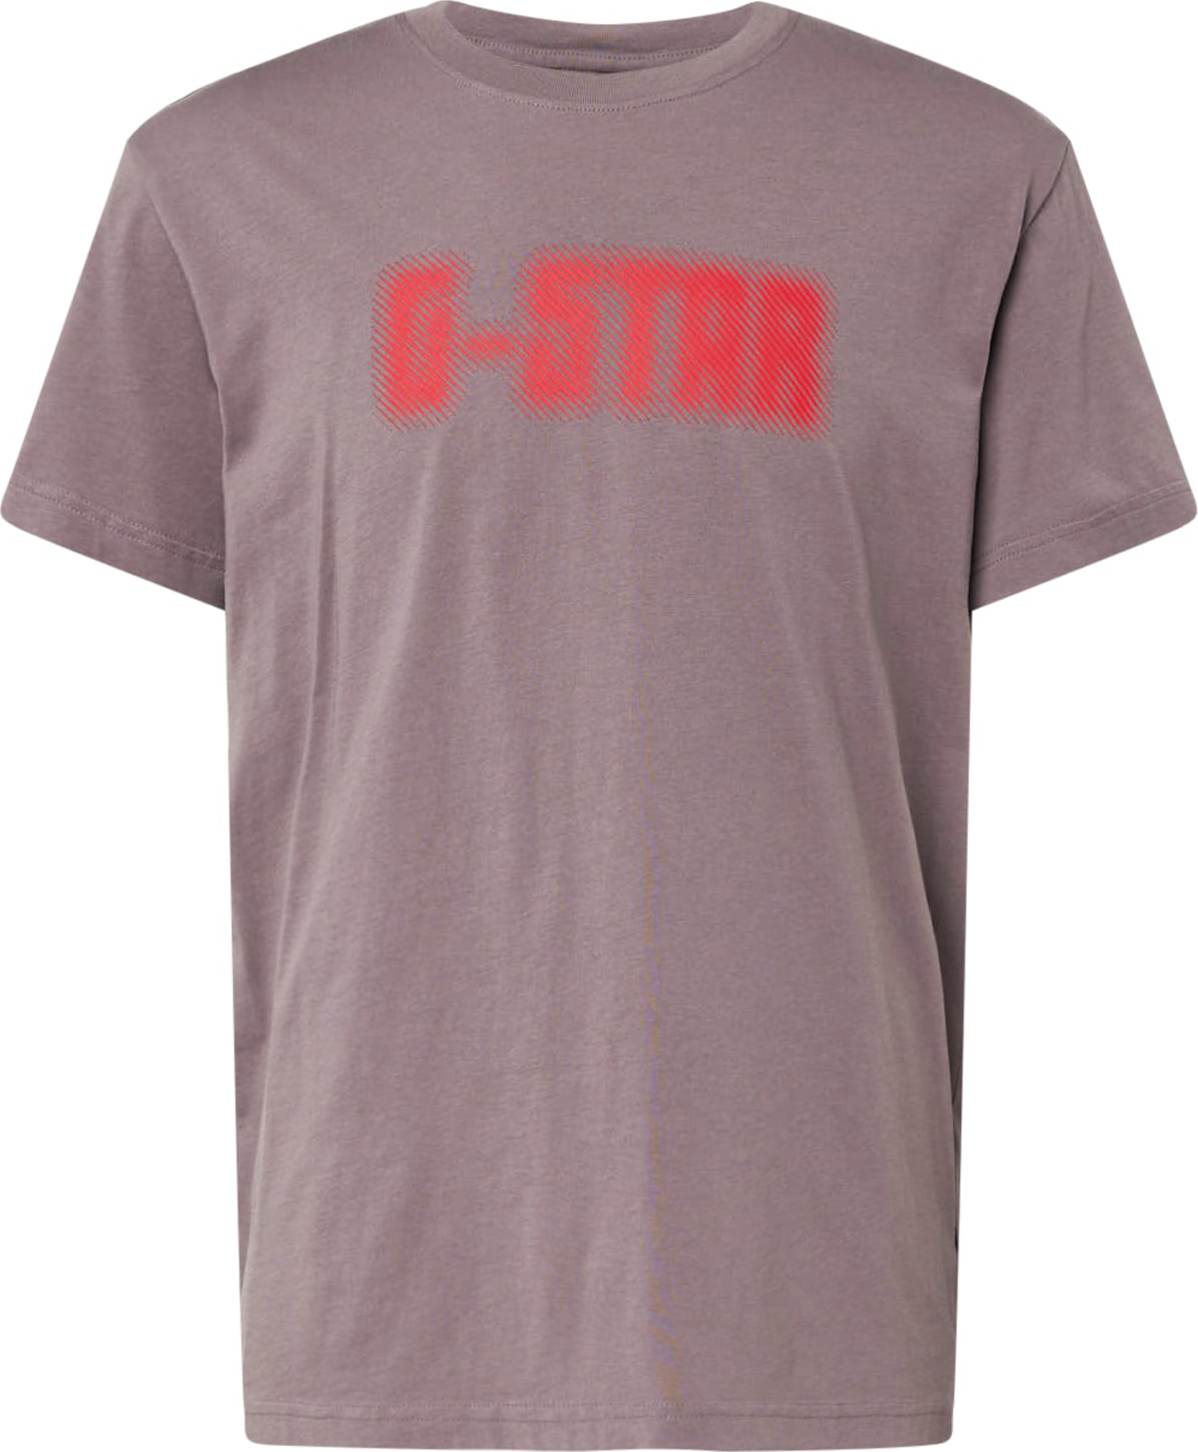 Tričko G-Star Raw režná / korálová